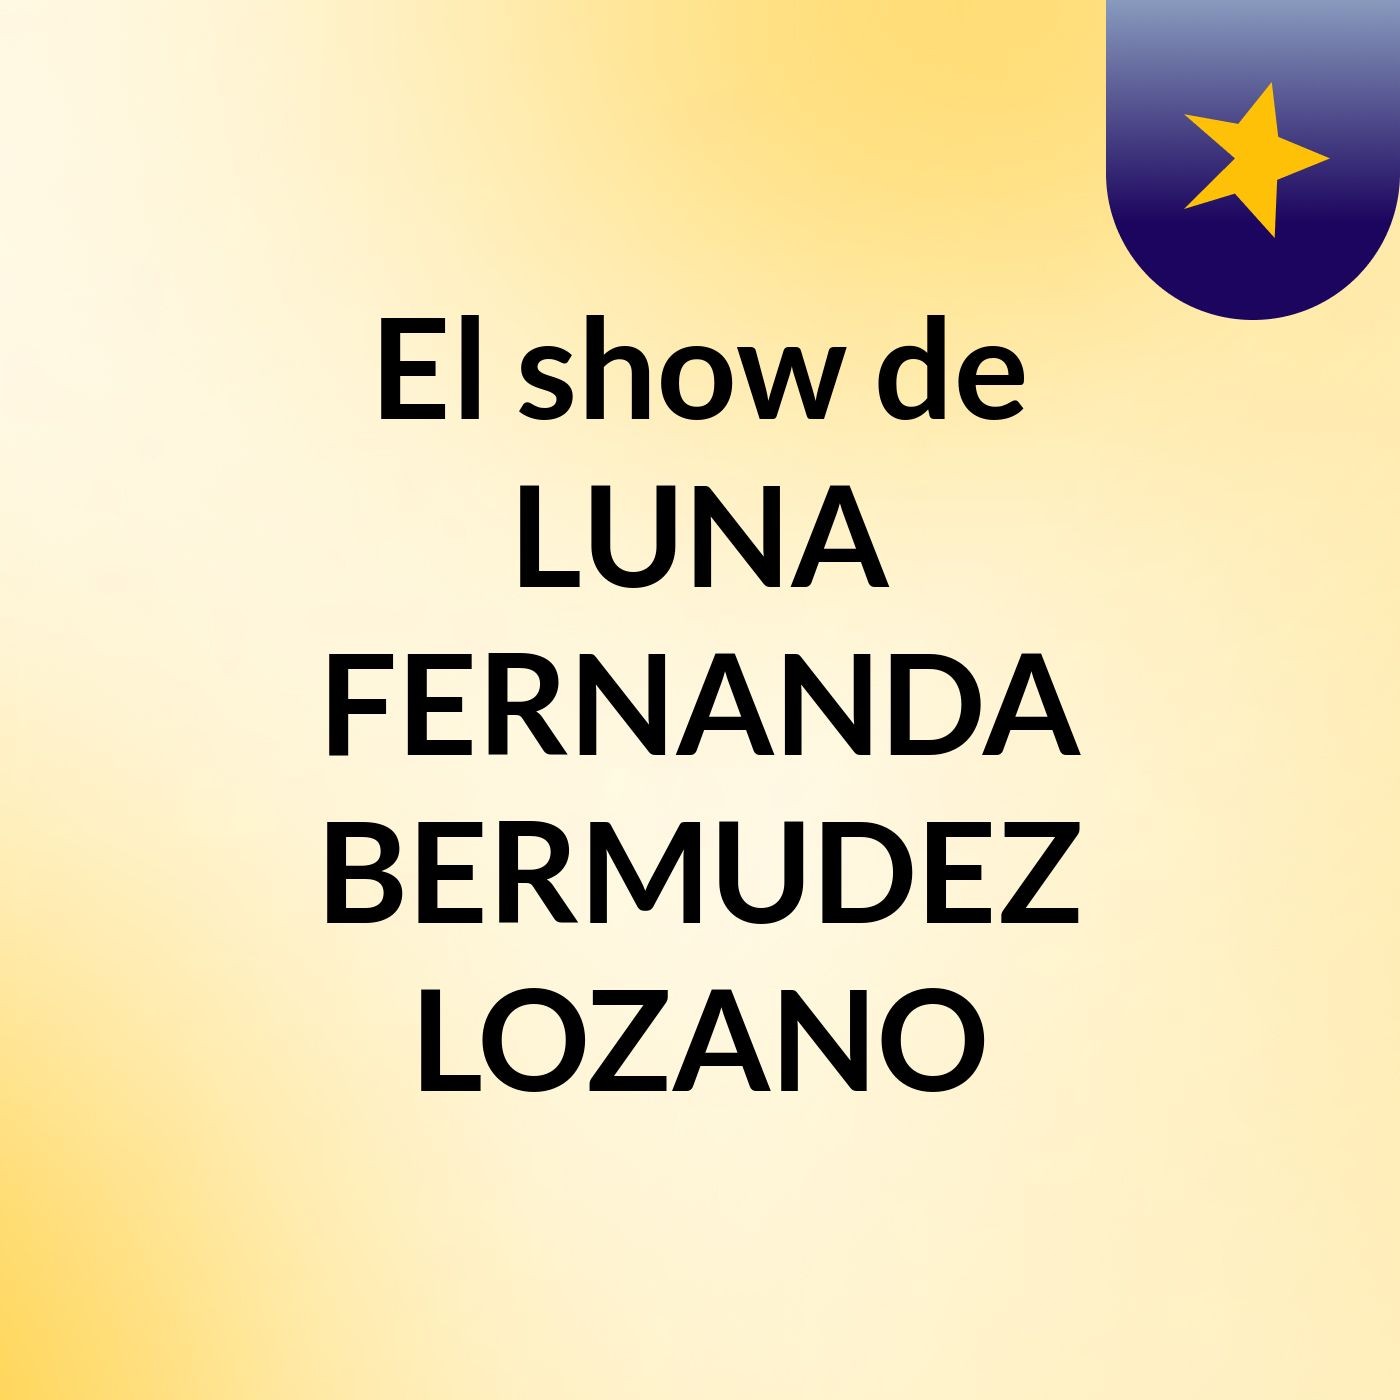 El show de LUNA FERNANDA BERMUDEZ LOZANO